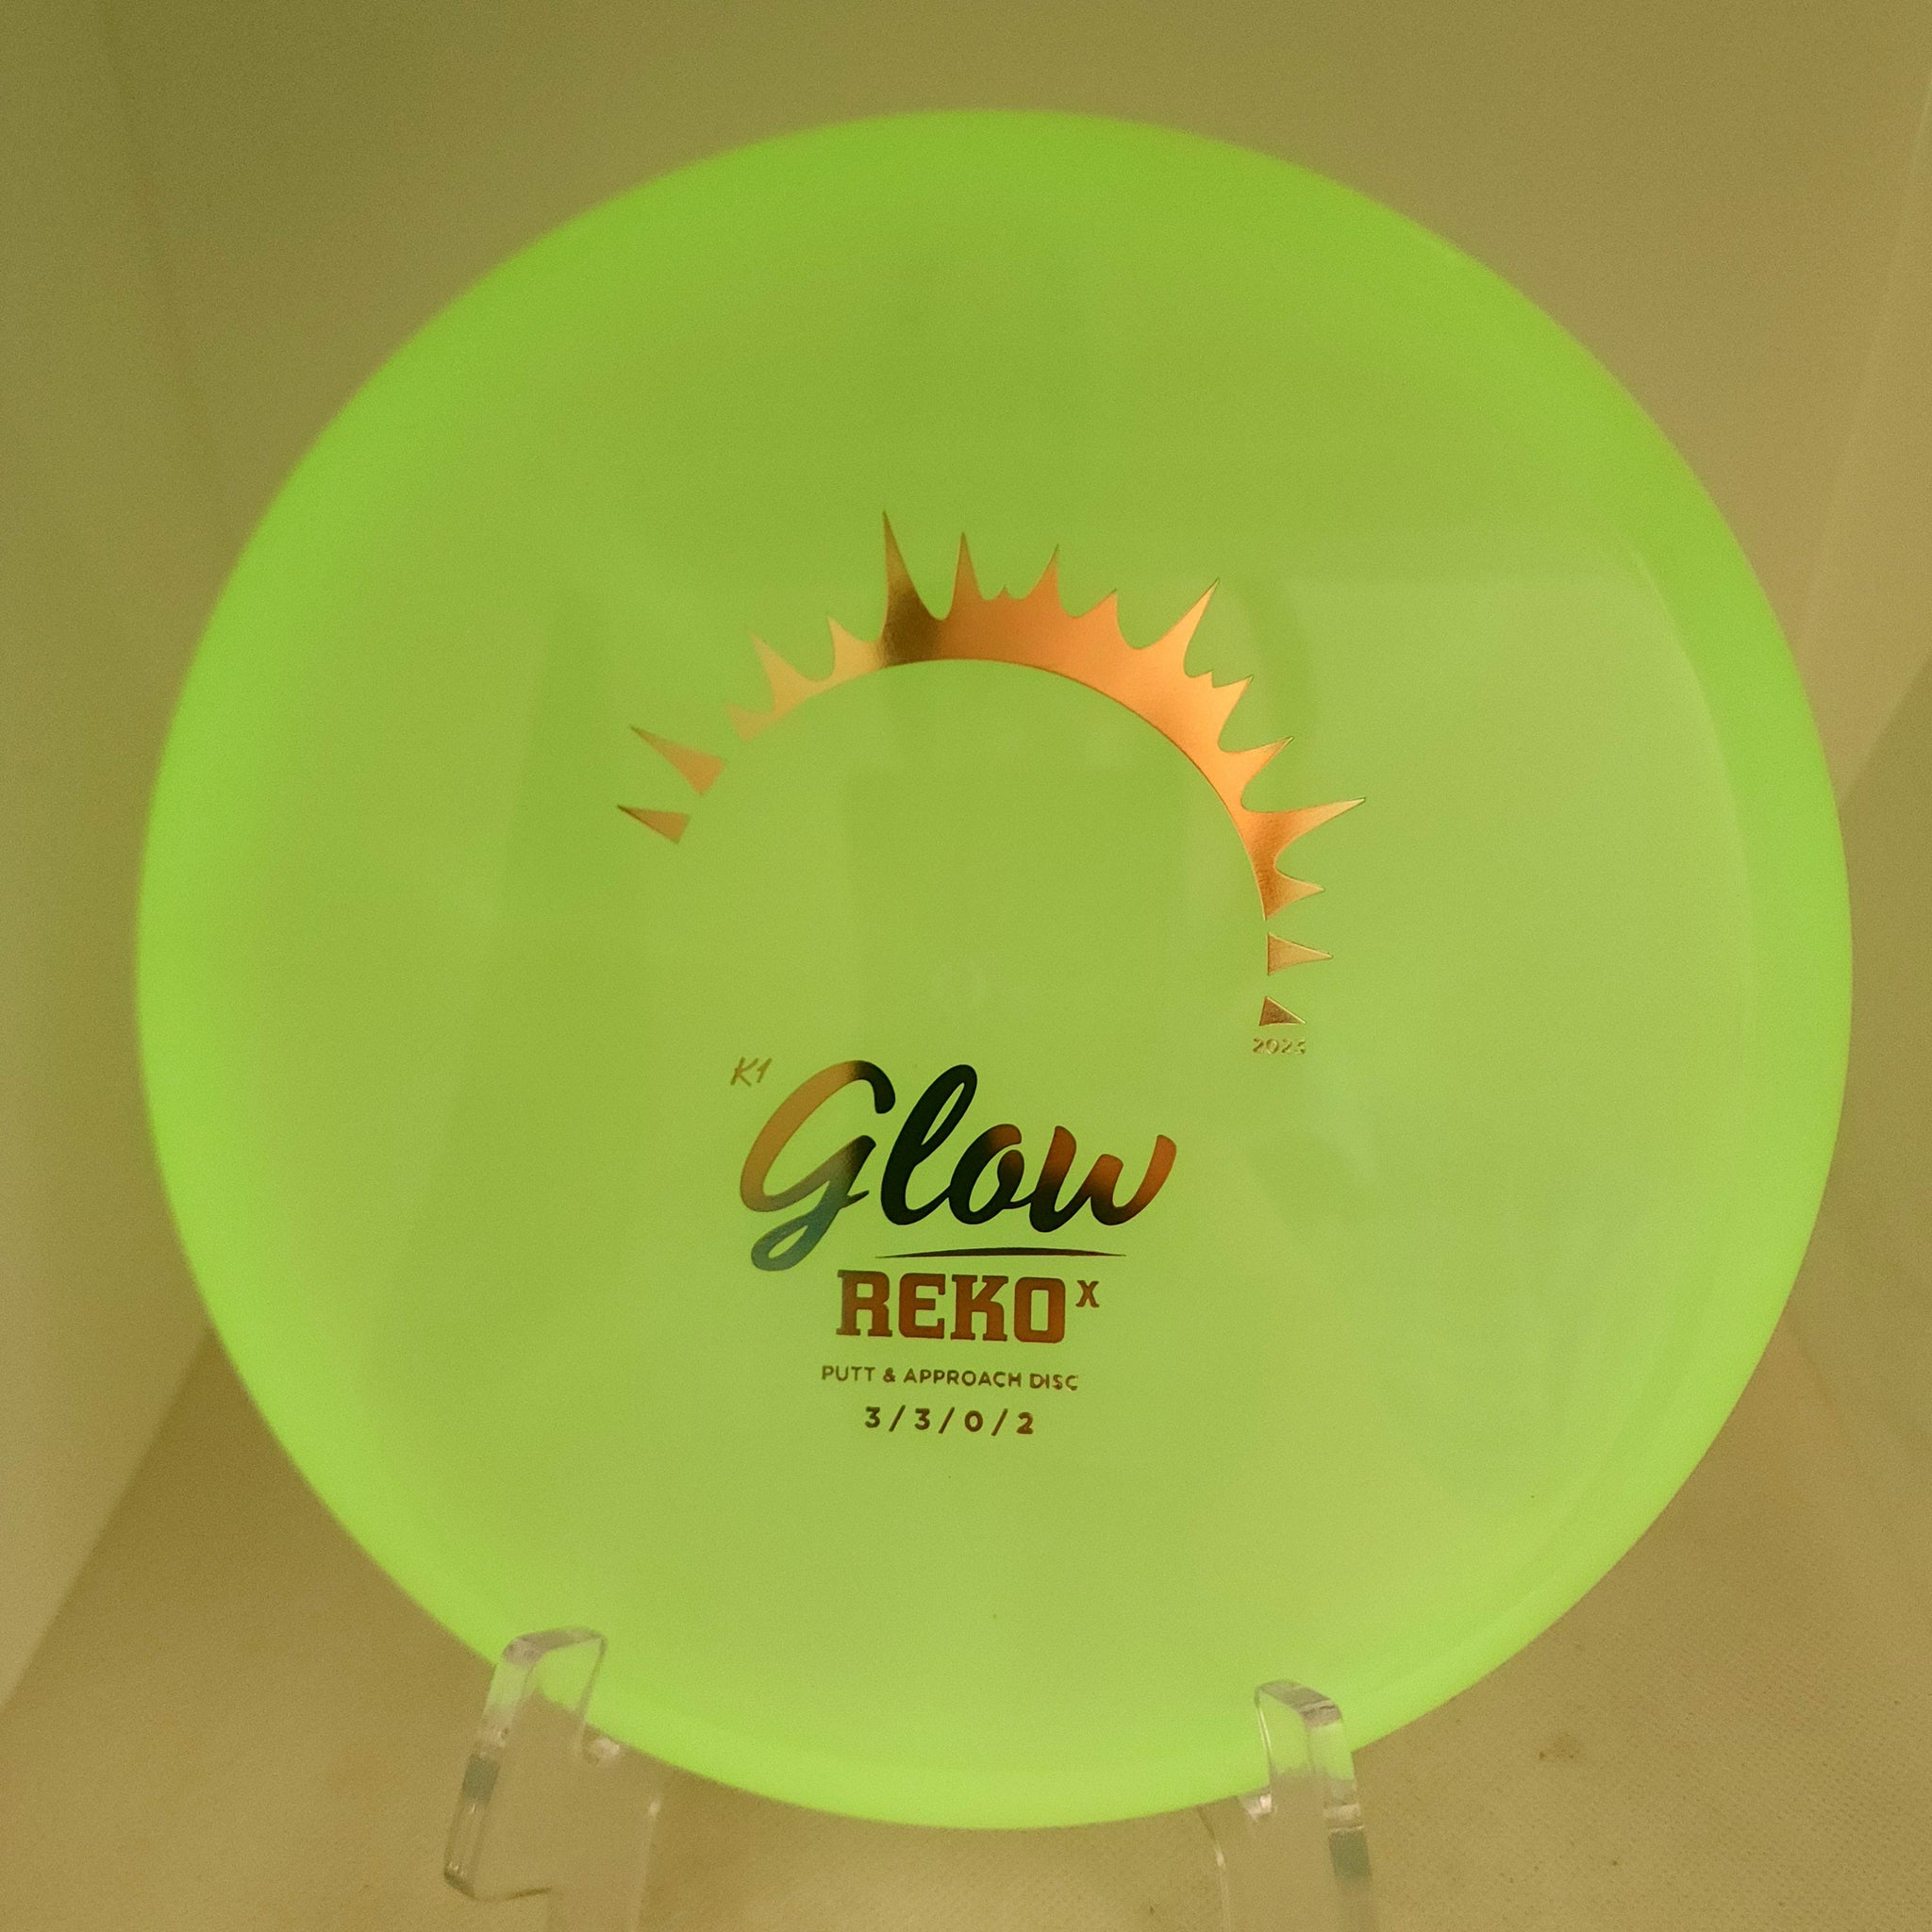 Reko (K1 Glow)